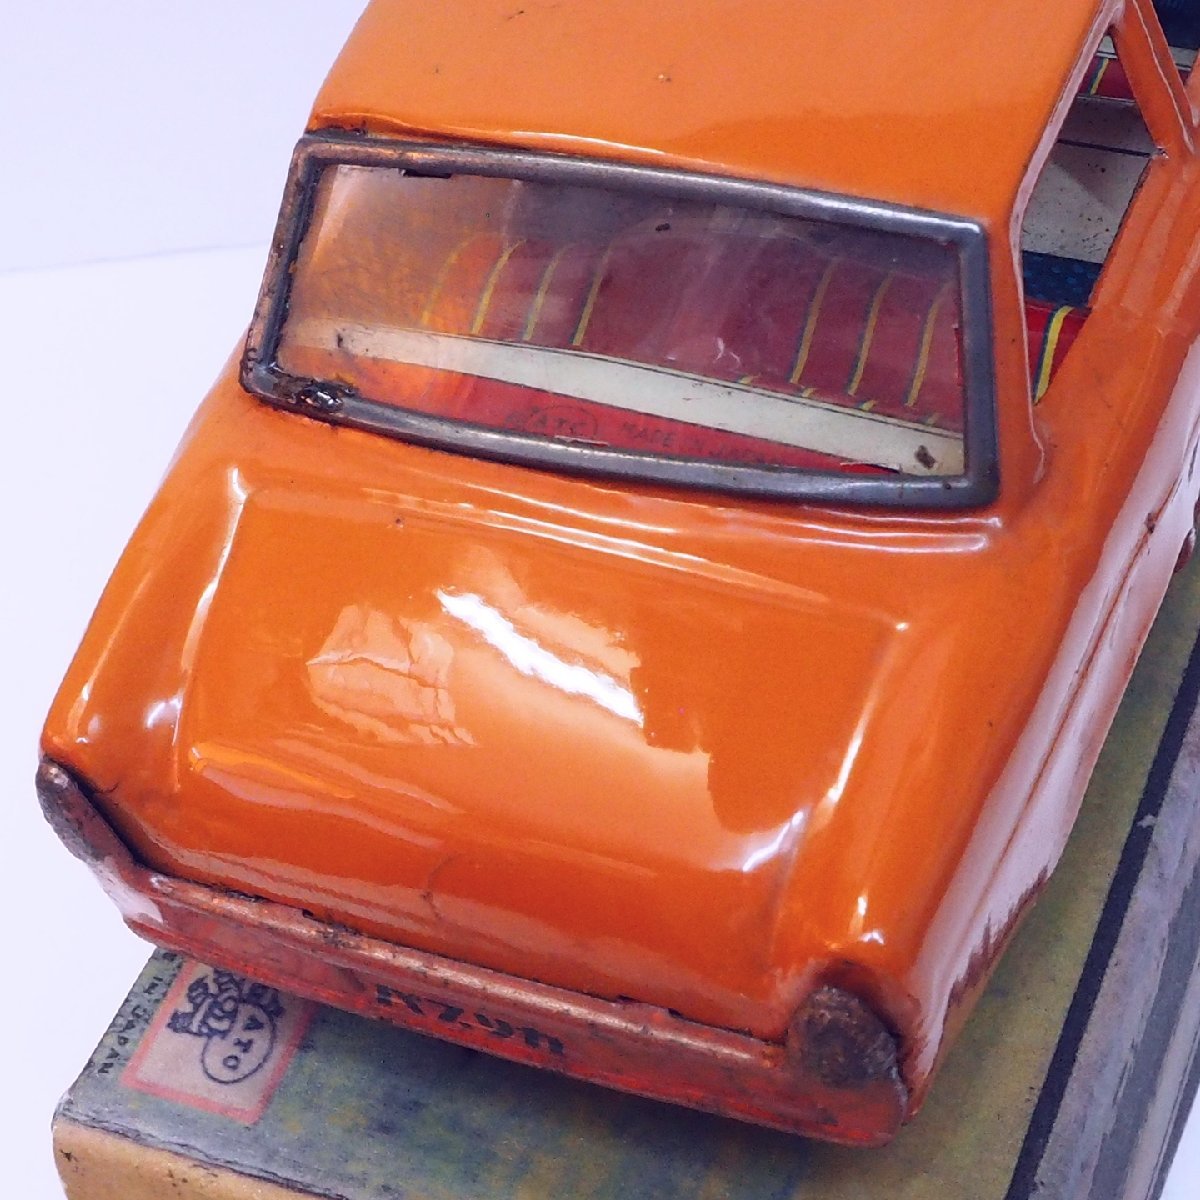  asahi игрушка [ Toyota Publica TOYOTA PUBLICA оранжевый orange ] жестяная пластина tin toy car миниатюра автомобиль миникар #ATC Asahi игрушка [ коробка. копирование ]0053